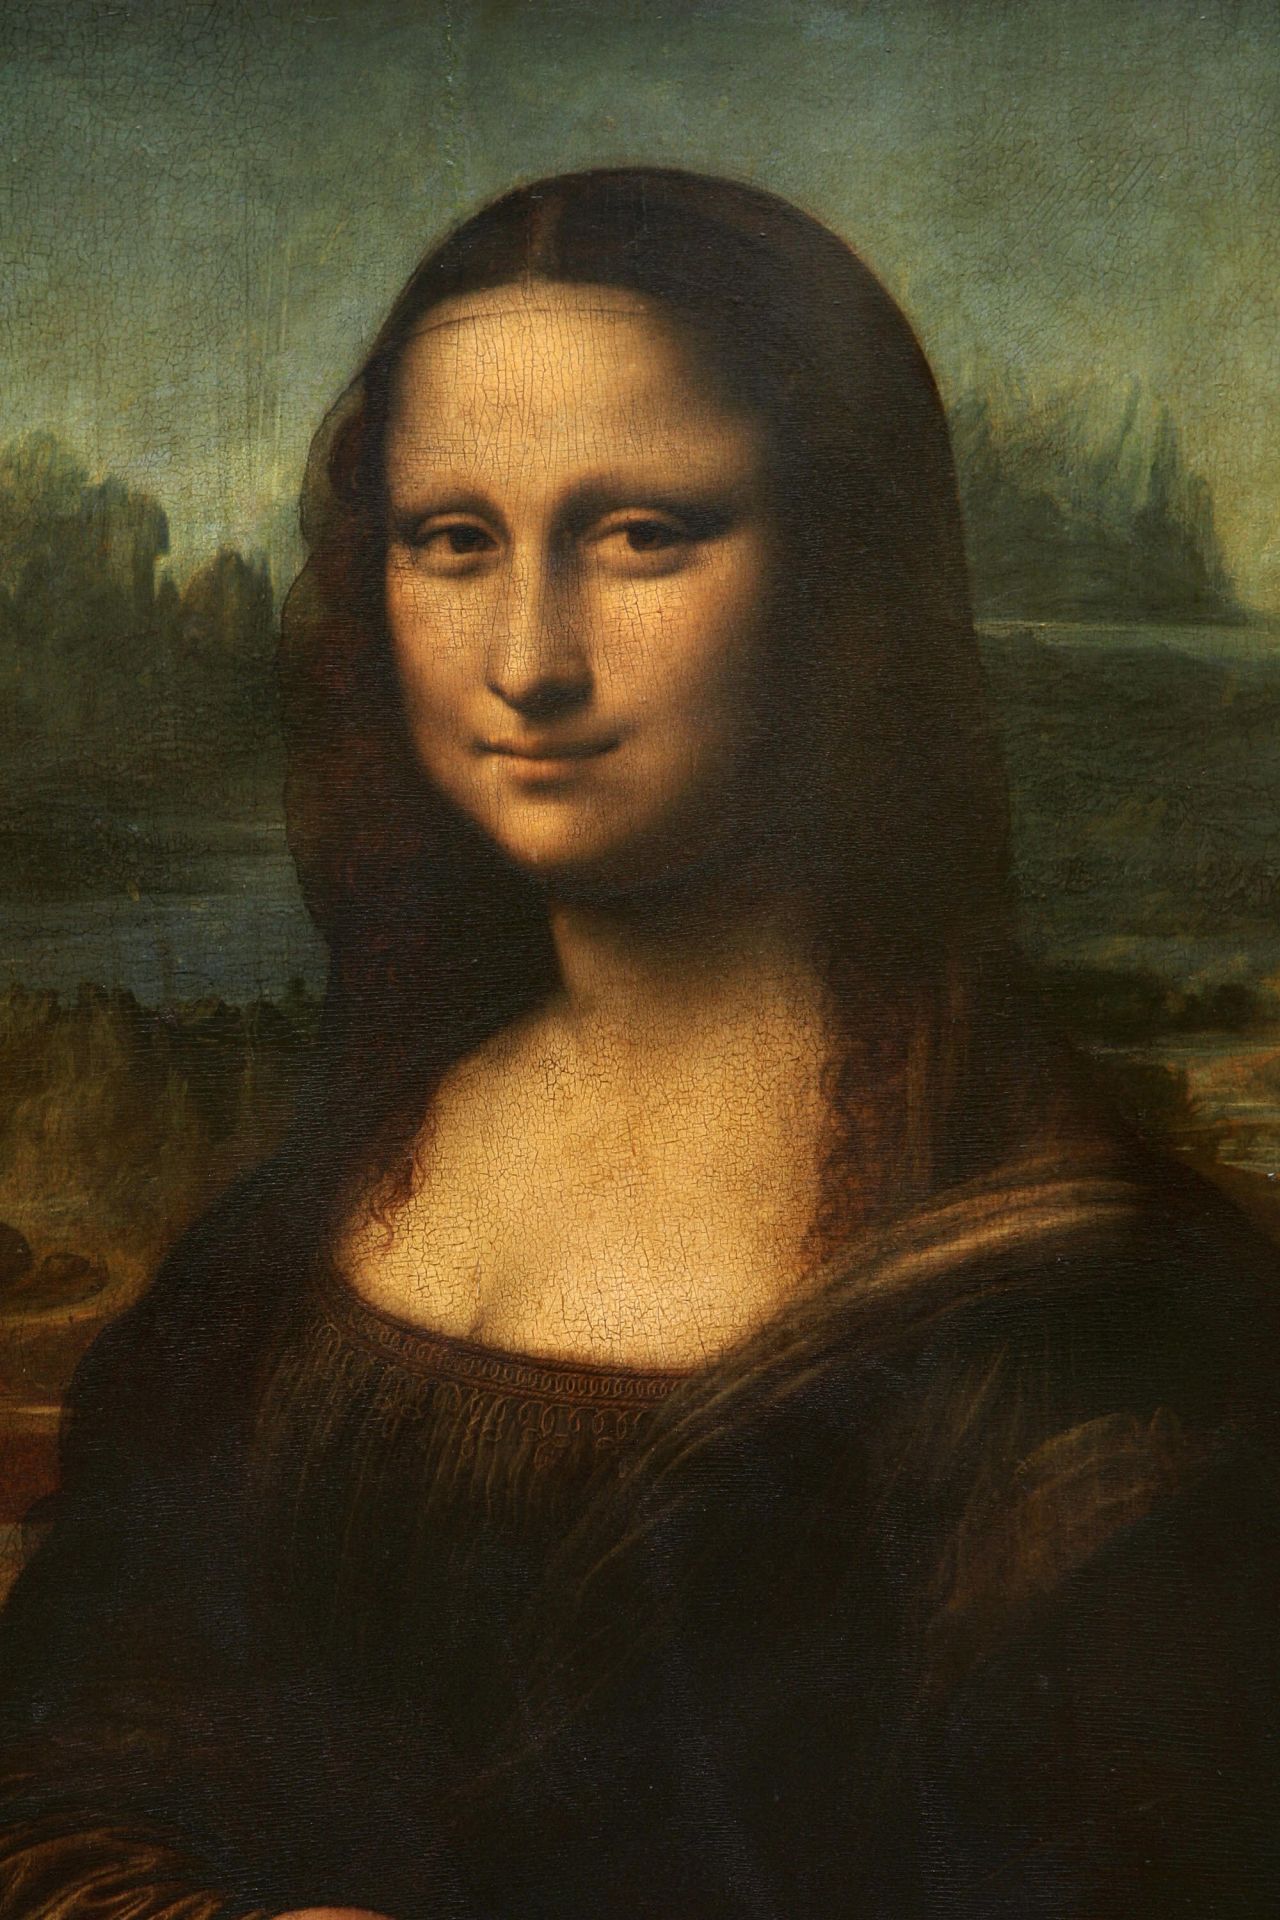 Hasta el momento en que fue robada en 1911, la Mona Lisa no necesariamente era el cuadro más famoso del mundo. Cuando el empleado de mantenimiento italiano Vincenzo Peruggia, robó la obra maestra de Leonardo da Vinci, se volvió una noticia importante a nivel internacional y fue lanzada a la fama.